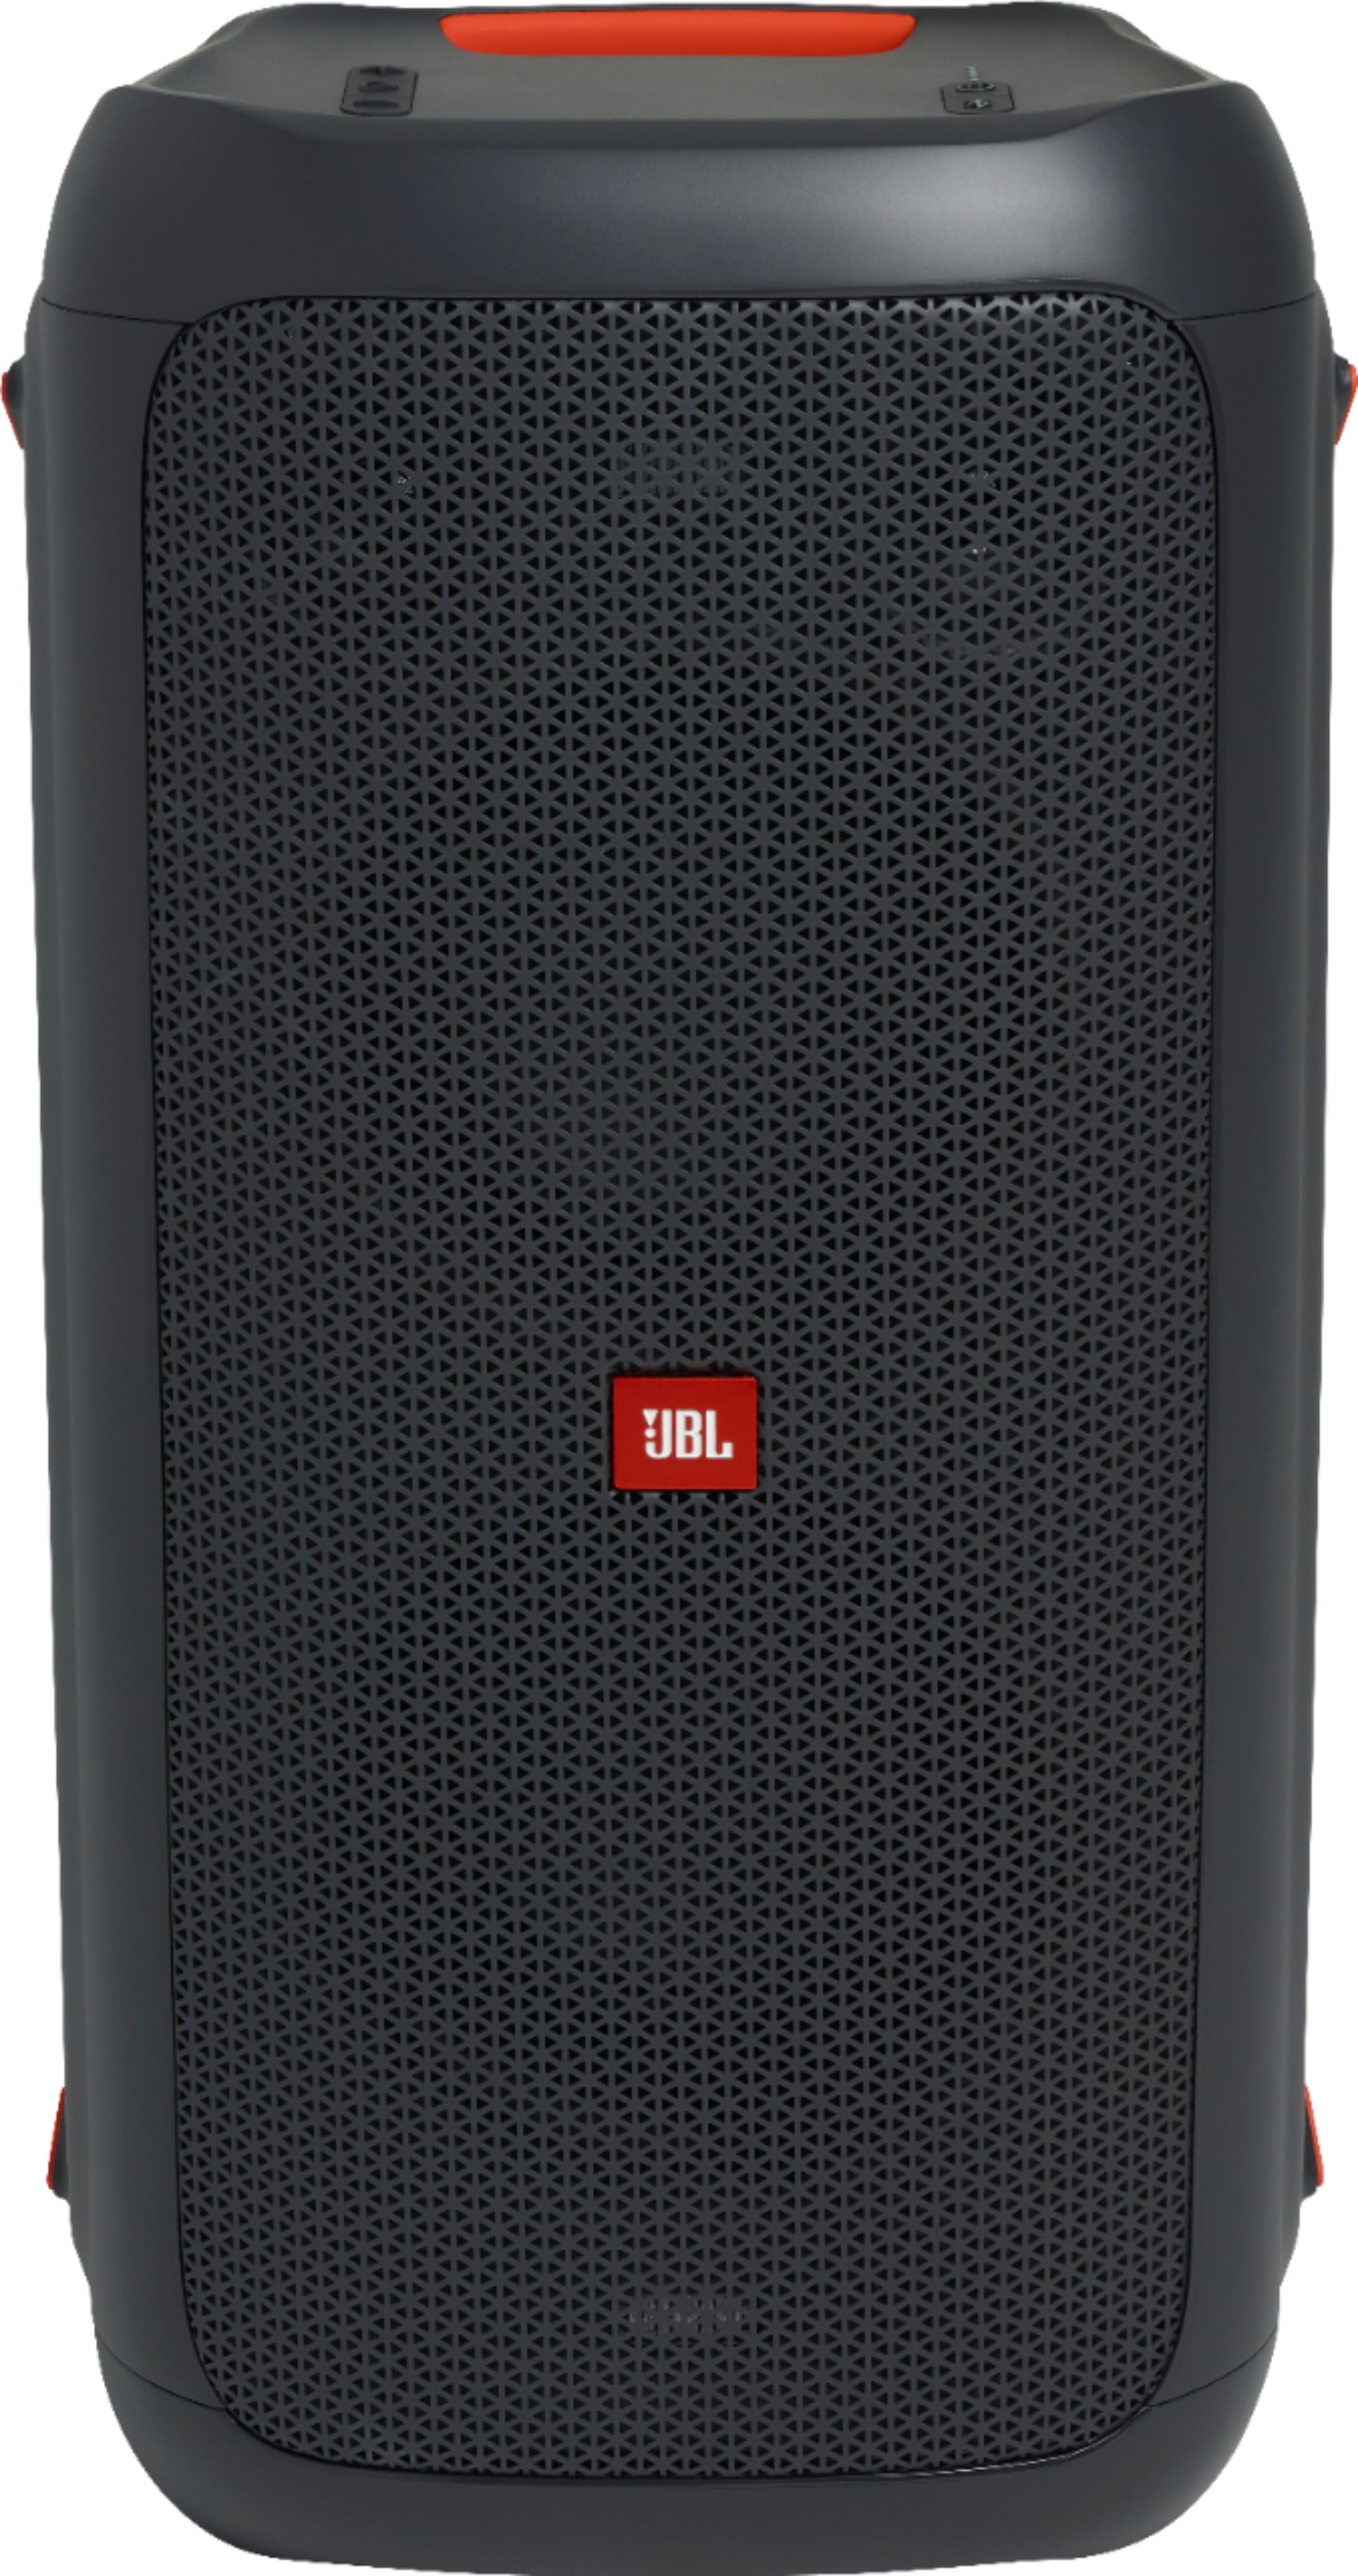 オーディオ機器 アンプ Best Buy: JBL PartyBox 100 Portable Bluetooth Speaker Black 